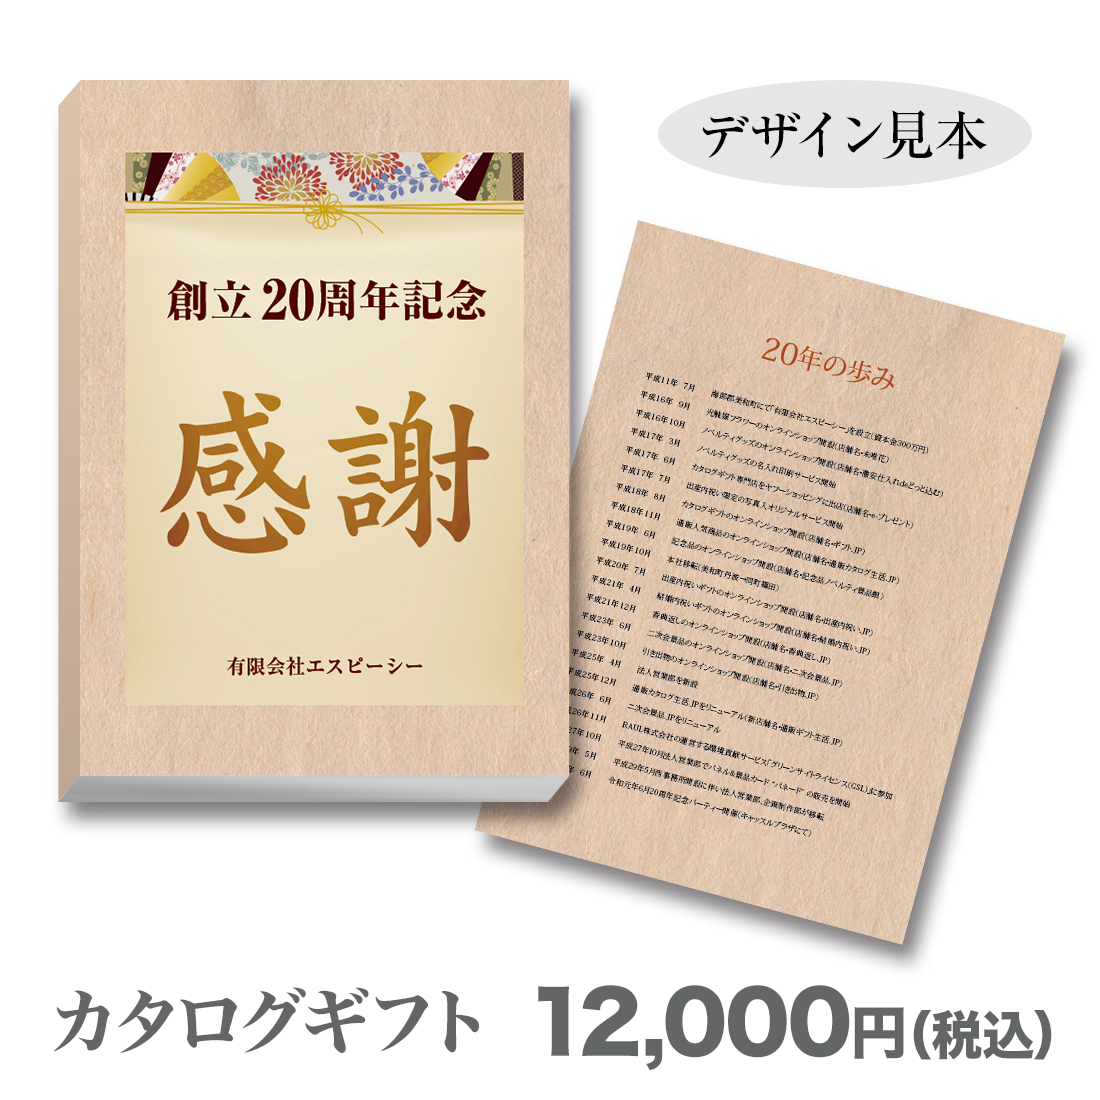 ブックカバー付カタログギフト 感謝 12 000円 記念品 ノベルティ 景品館